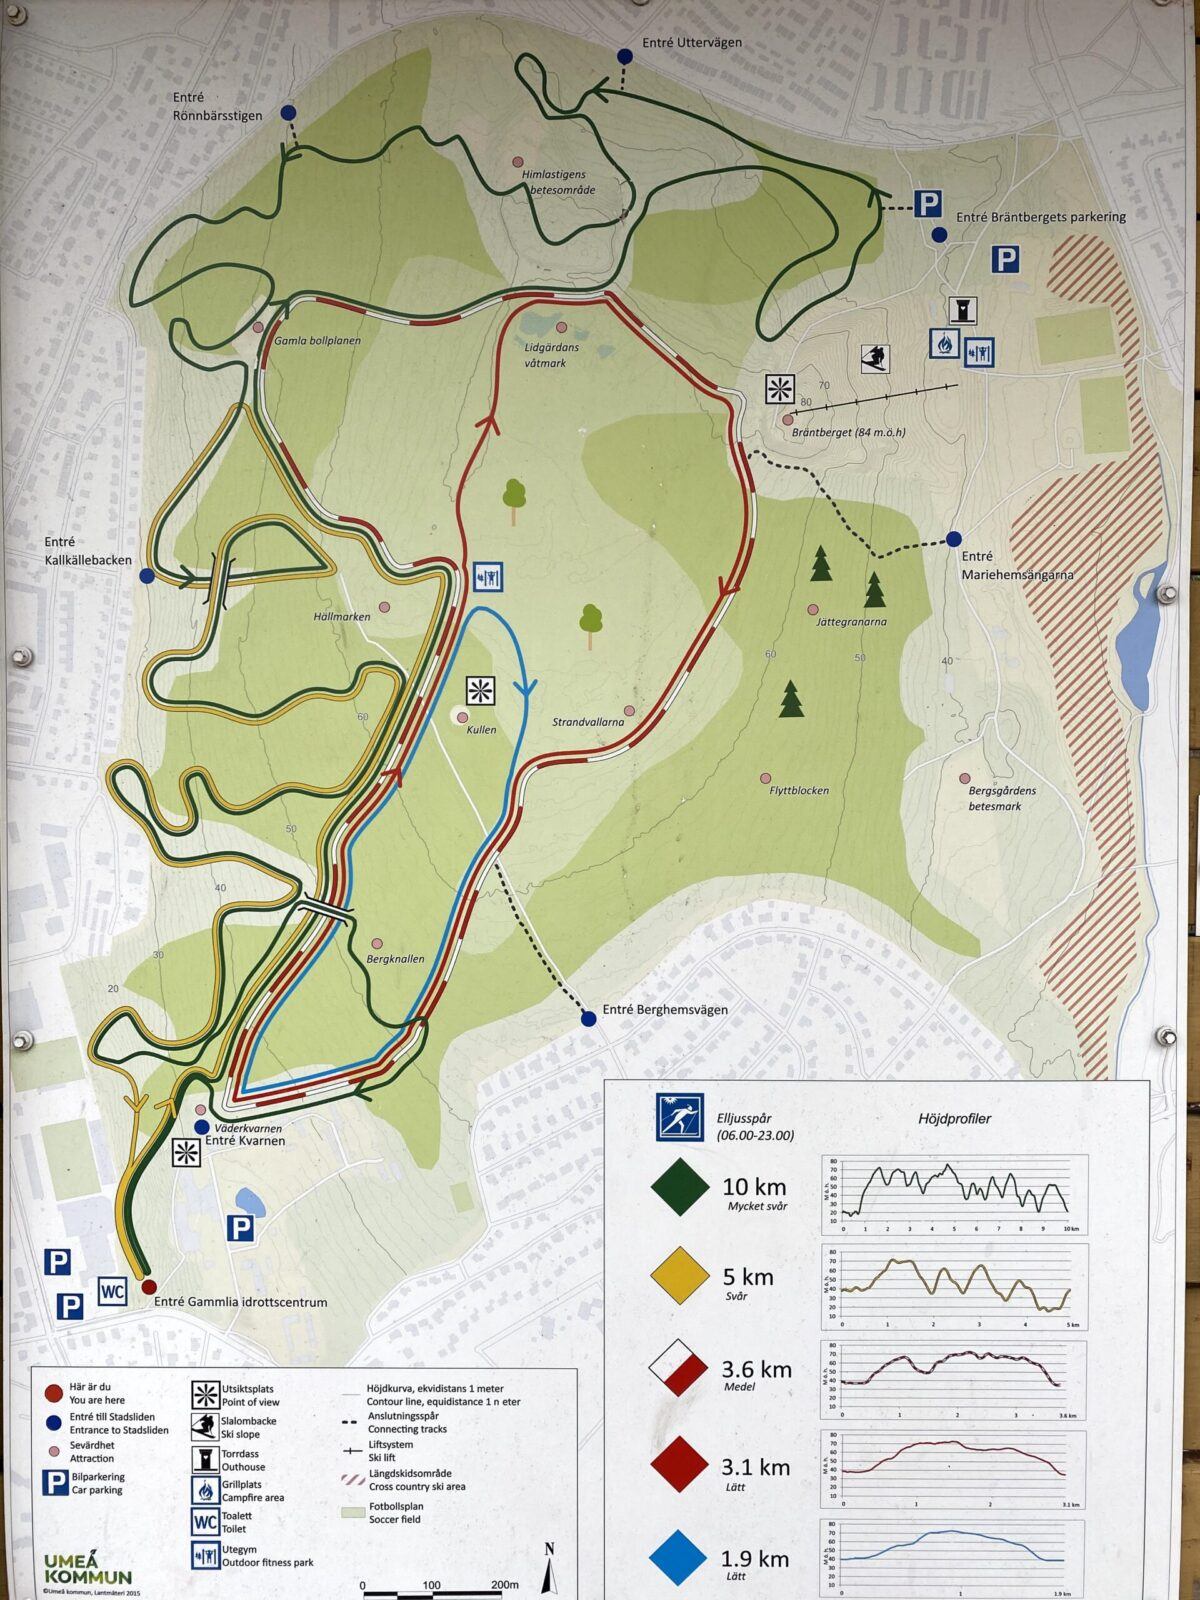 Karta över Stadsliden/Gammliaskogens motionsspår i Umeå